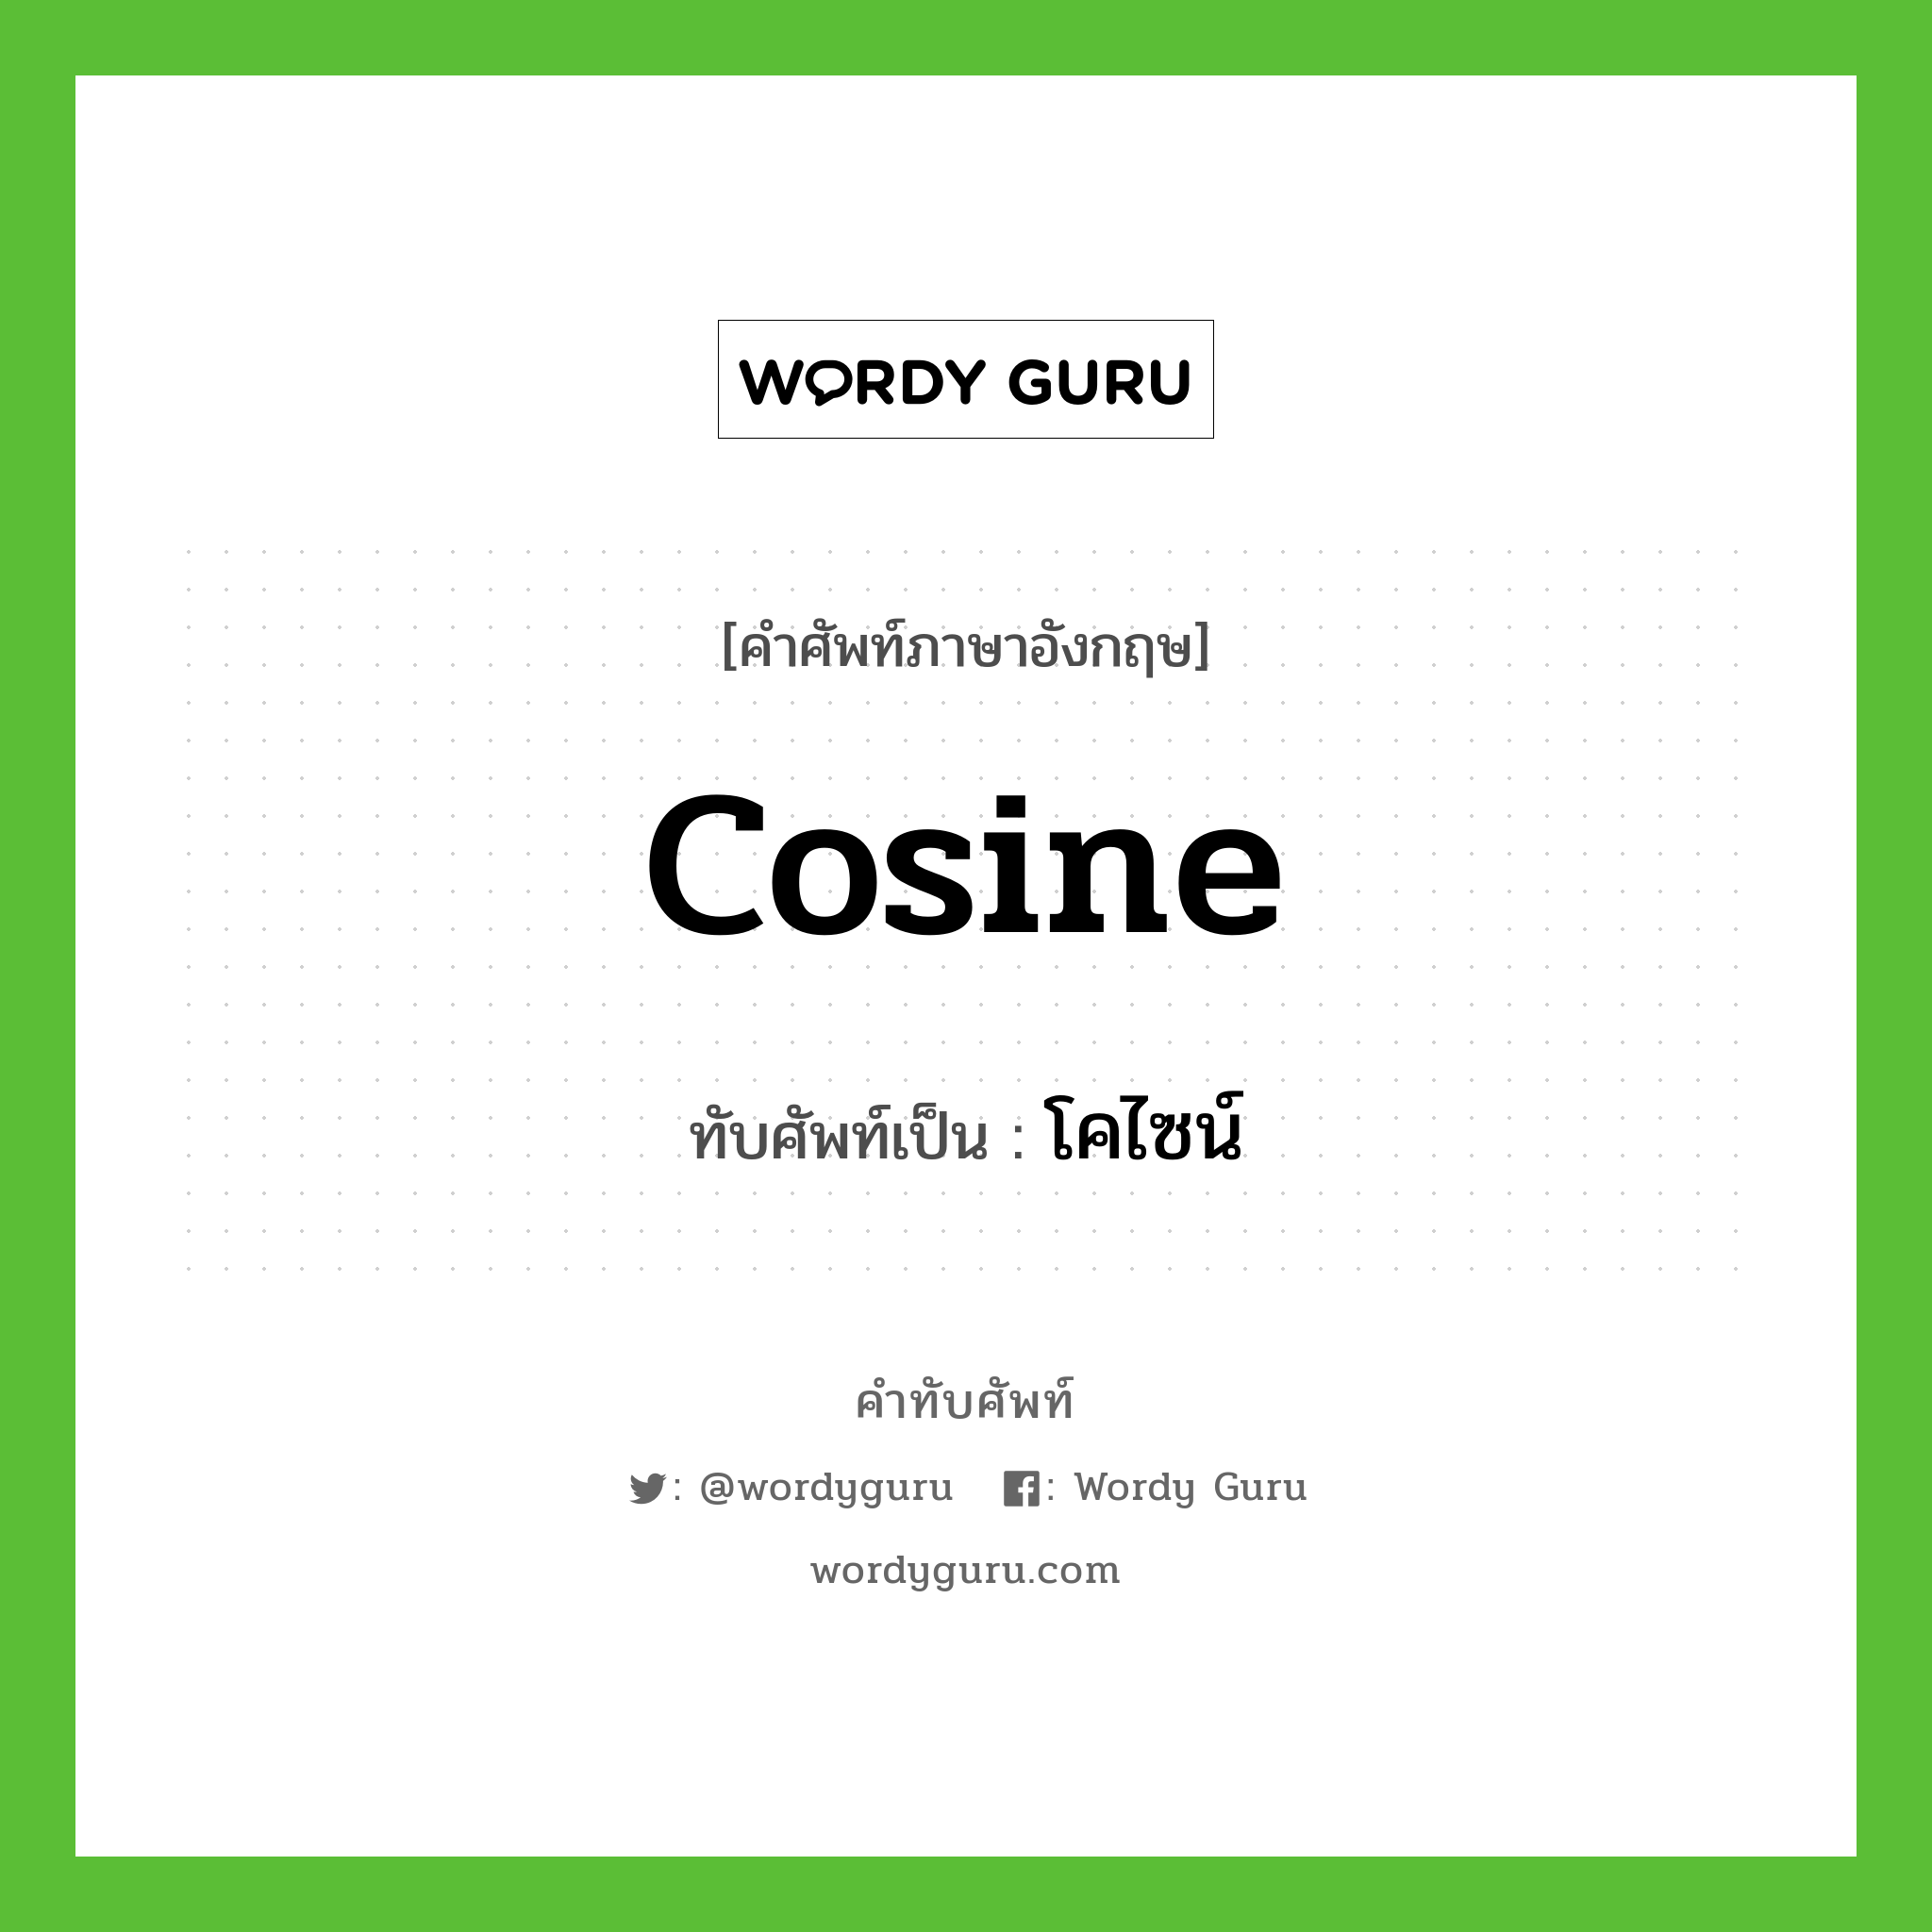 cosine เขียนเป็นคำไทยว่าอะไร?, คำศัพท์ภาษาอังกฤษ cosine ทับศัพท์เป็น โคไซน์